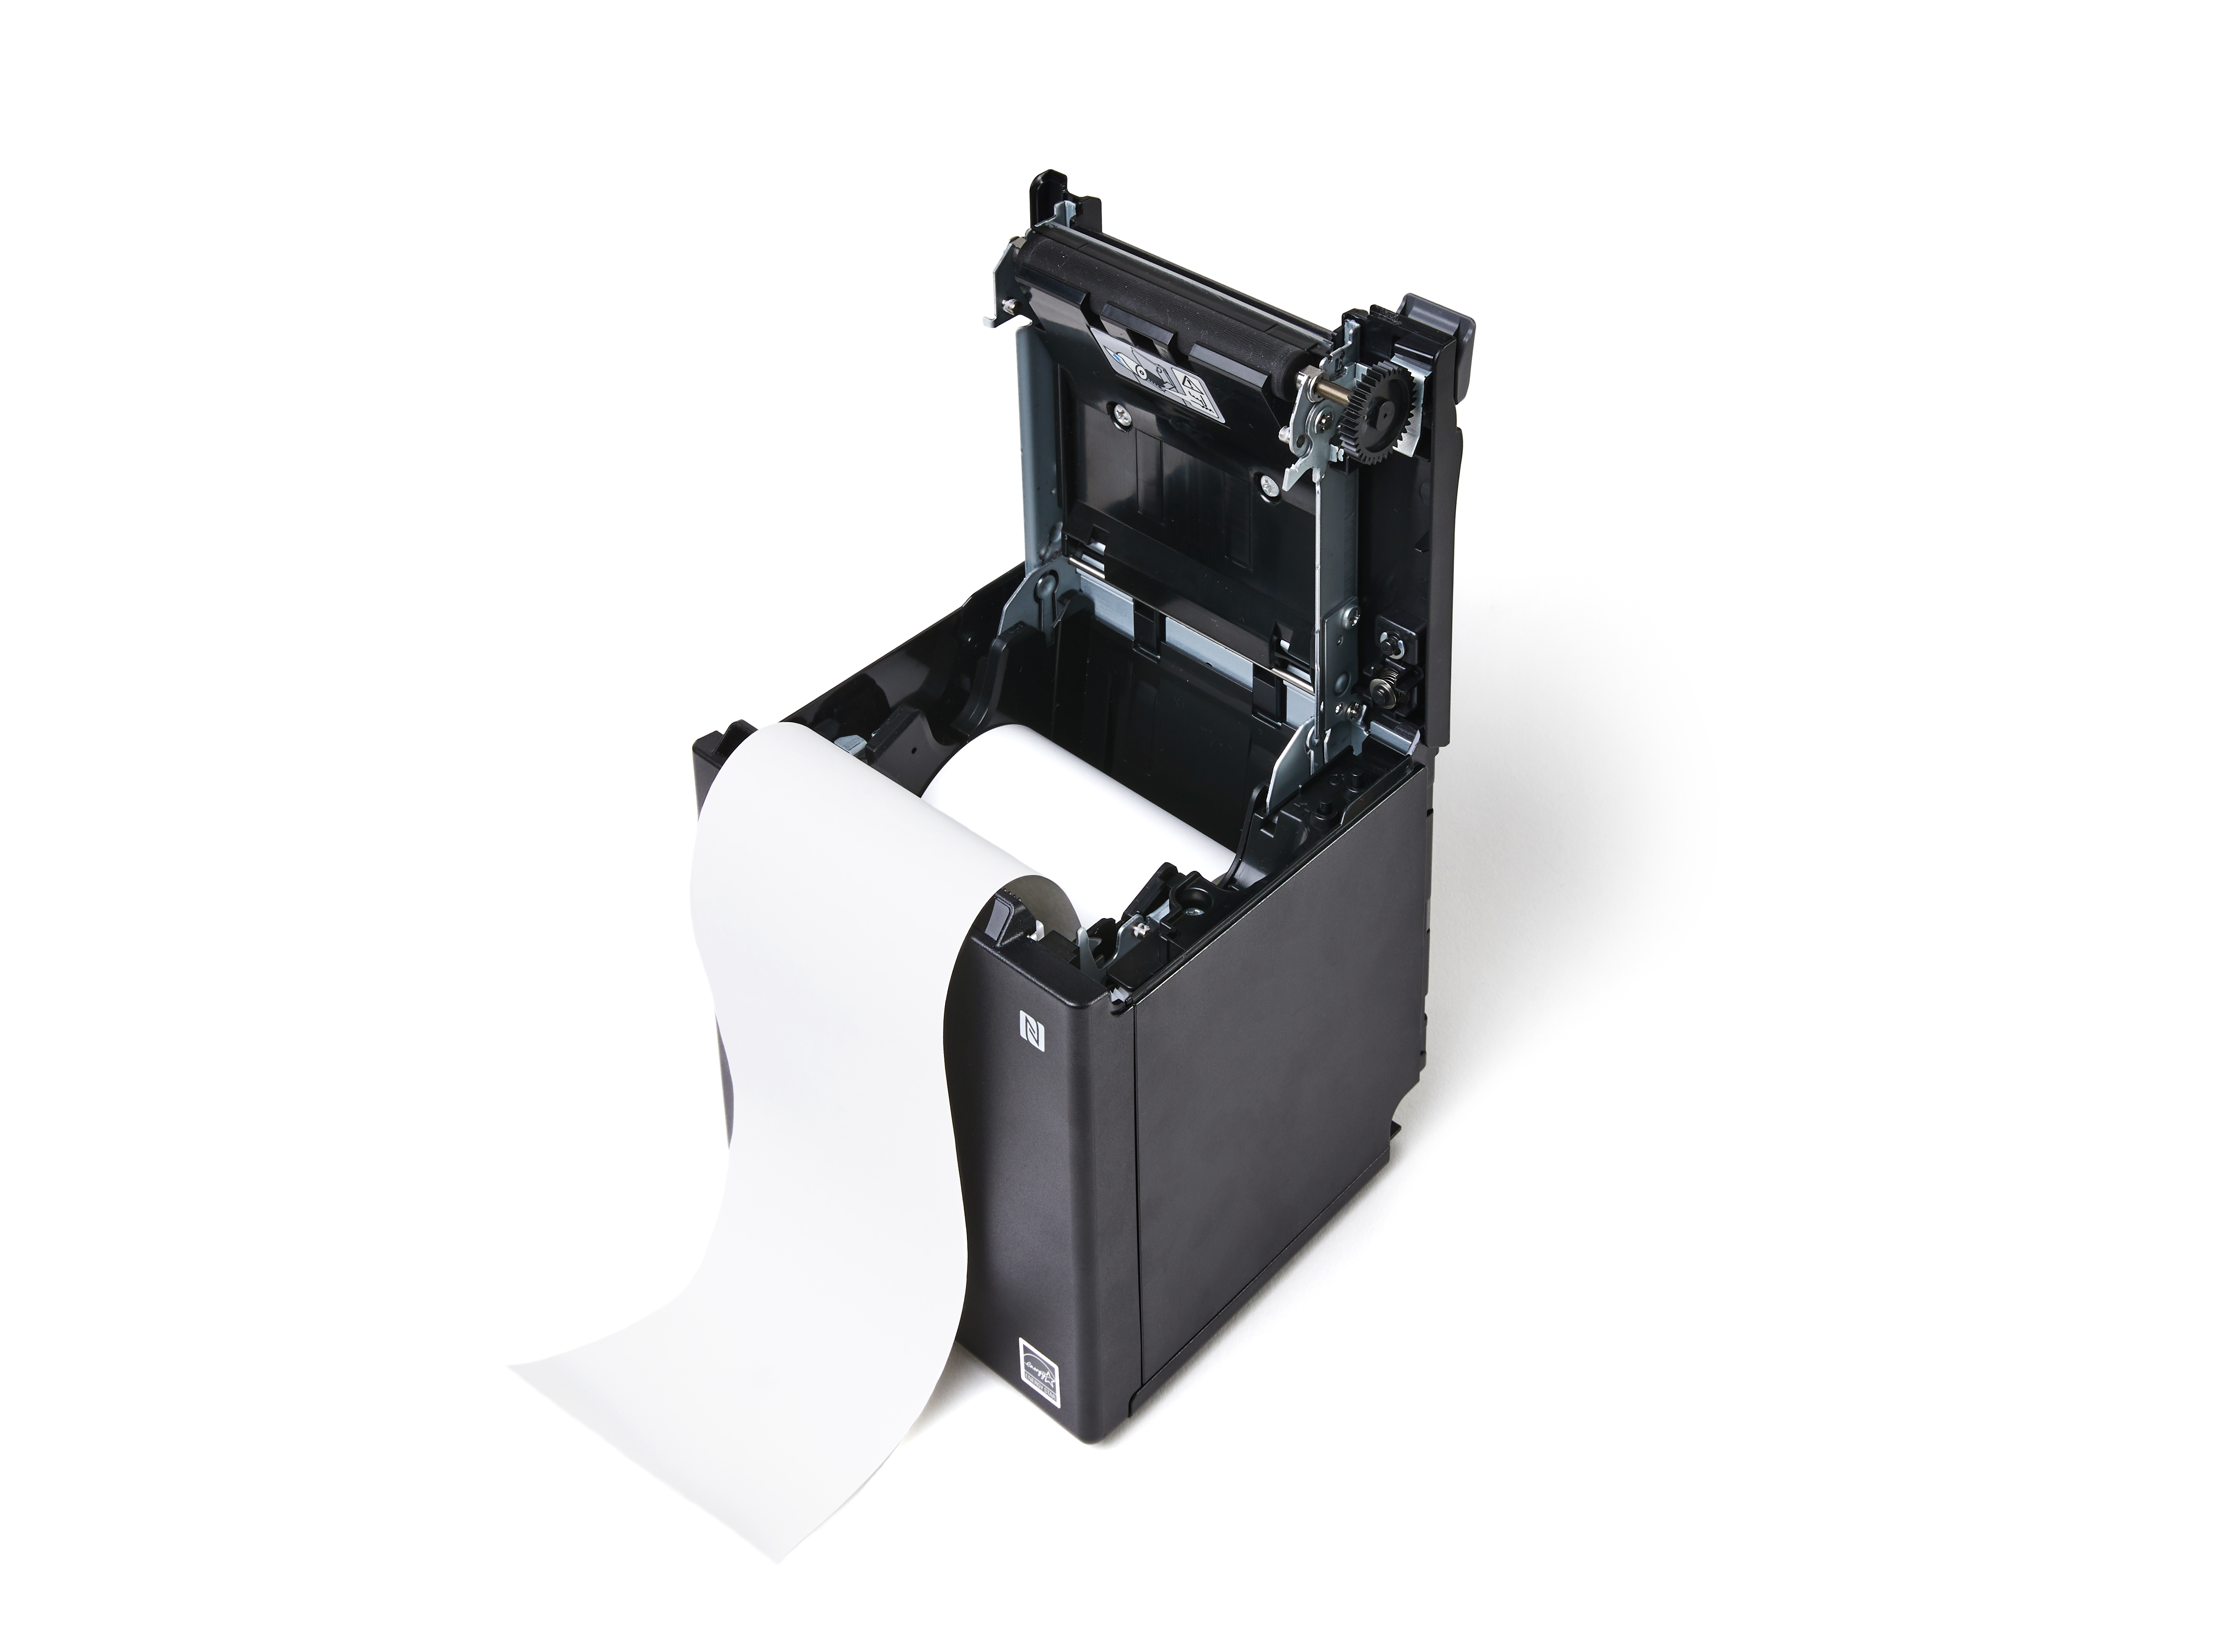 Printer met correct georiënteerde papierrol, het papier is langs het snijmechanisme aan de voorkant van de printer getrokken.